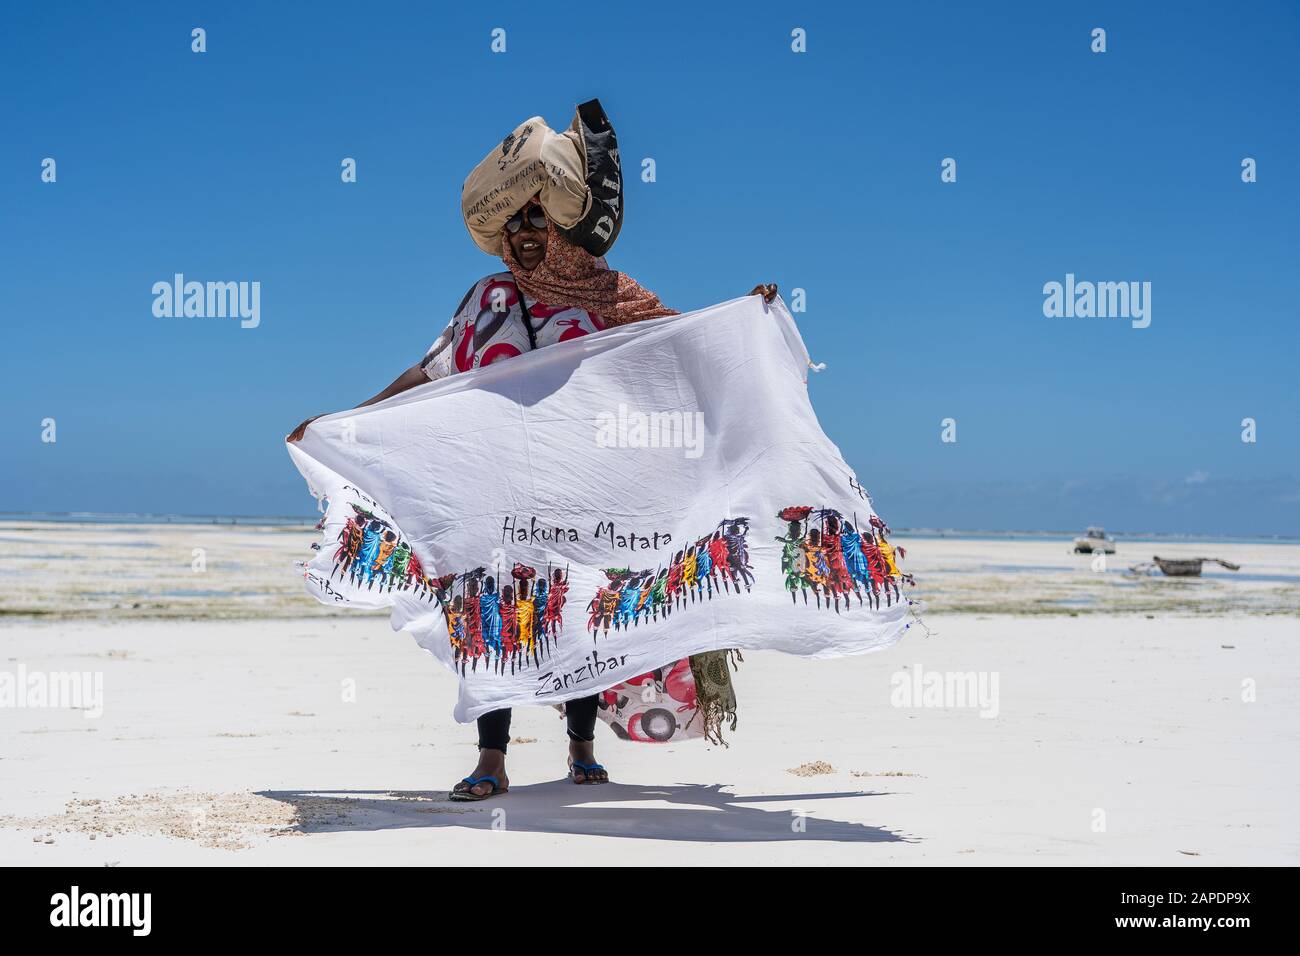 Impresionante mermelada menta Zanzíbar, Tanzania - 28 de octubre de 2019 : una mujer africana vende  recuerdos y ropa para turistas cerca del océano en la playa de arena de la  isla de Zanzíbar, Tanz